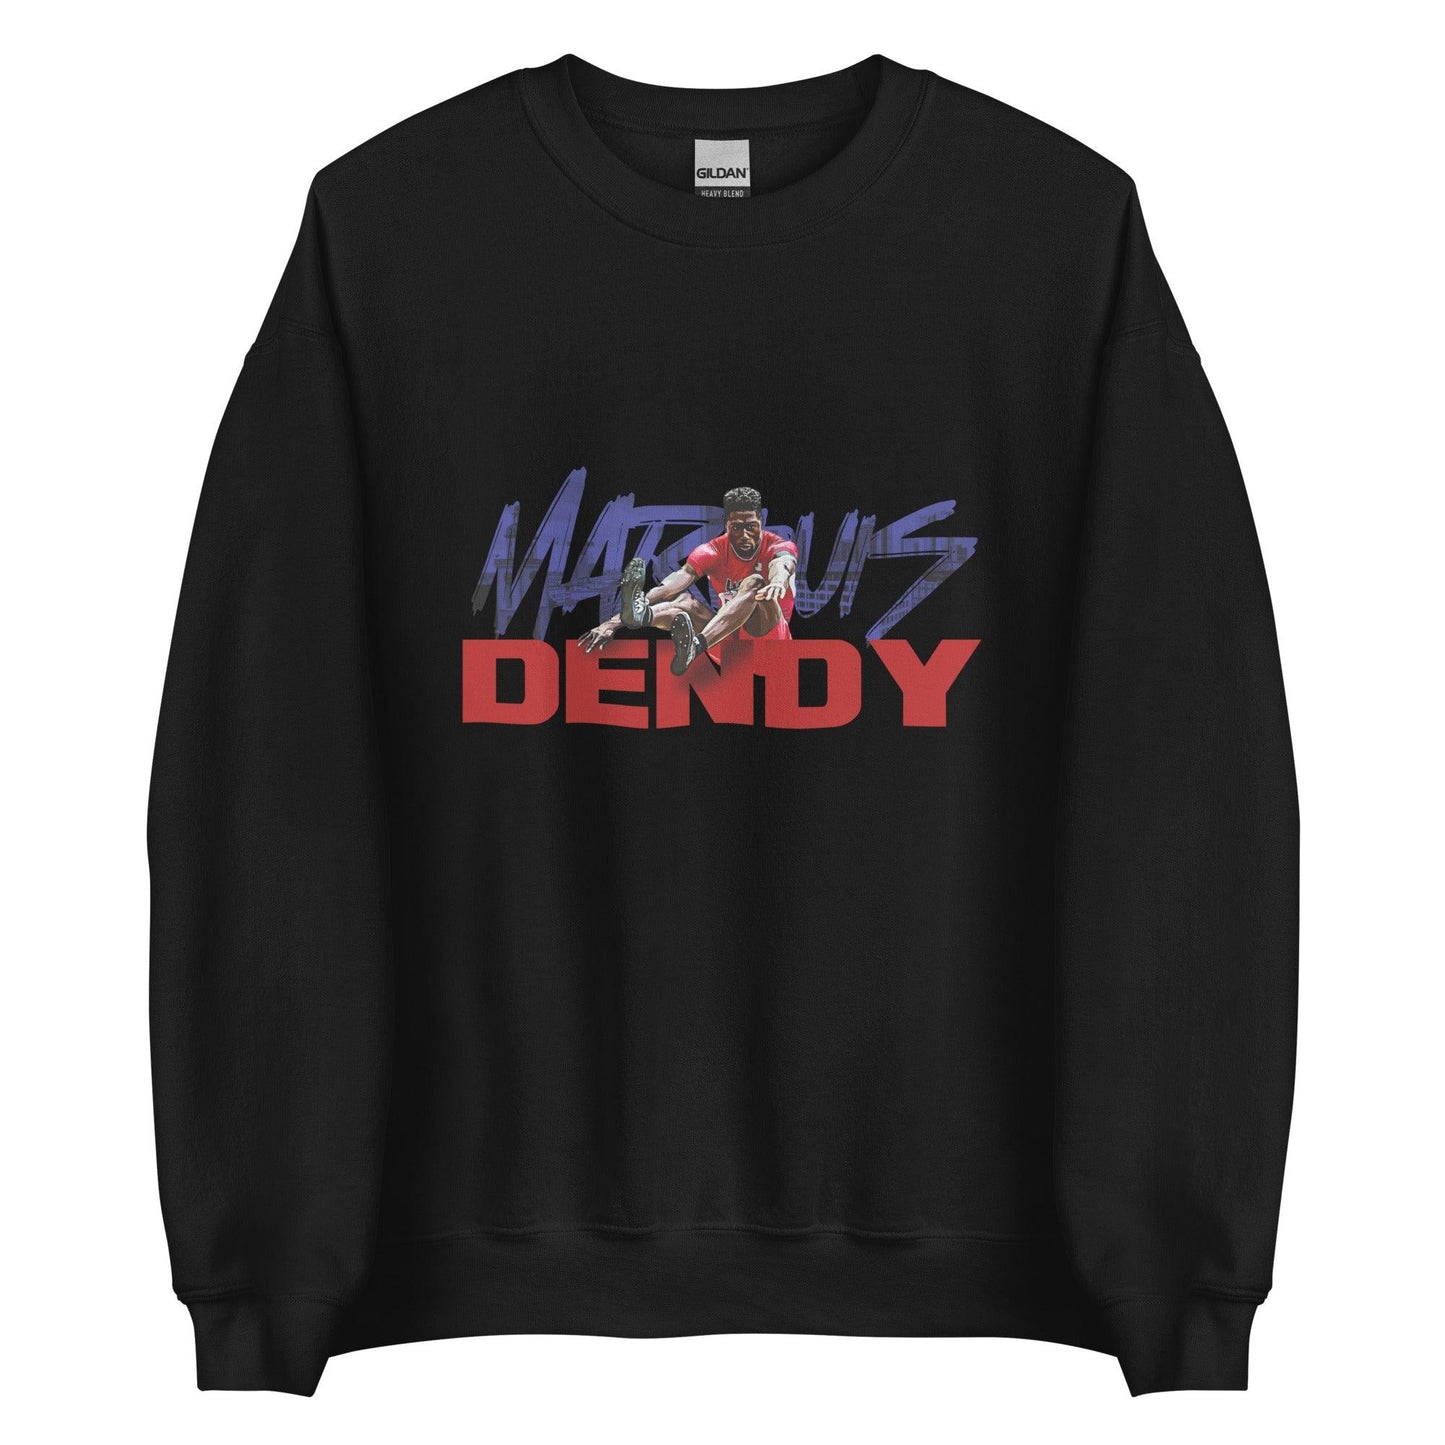 Marquis Dendy "Gameday" Sweatshirt - Fan Arch